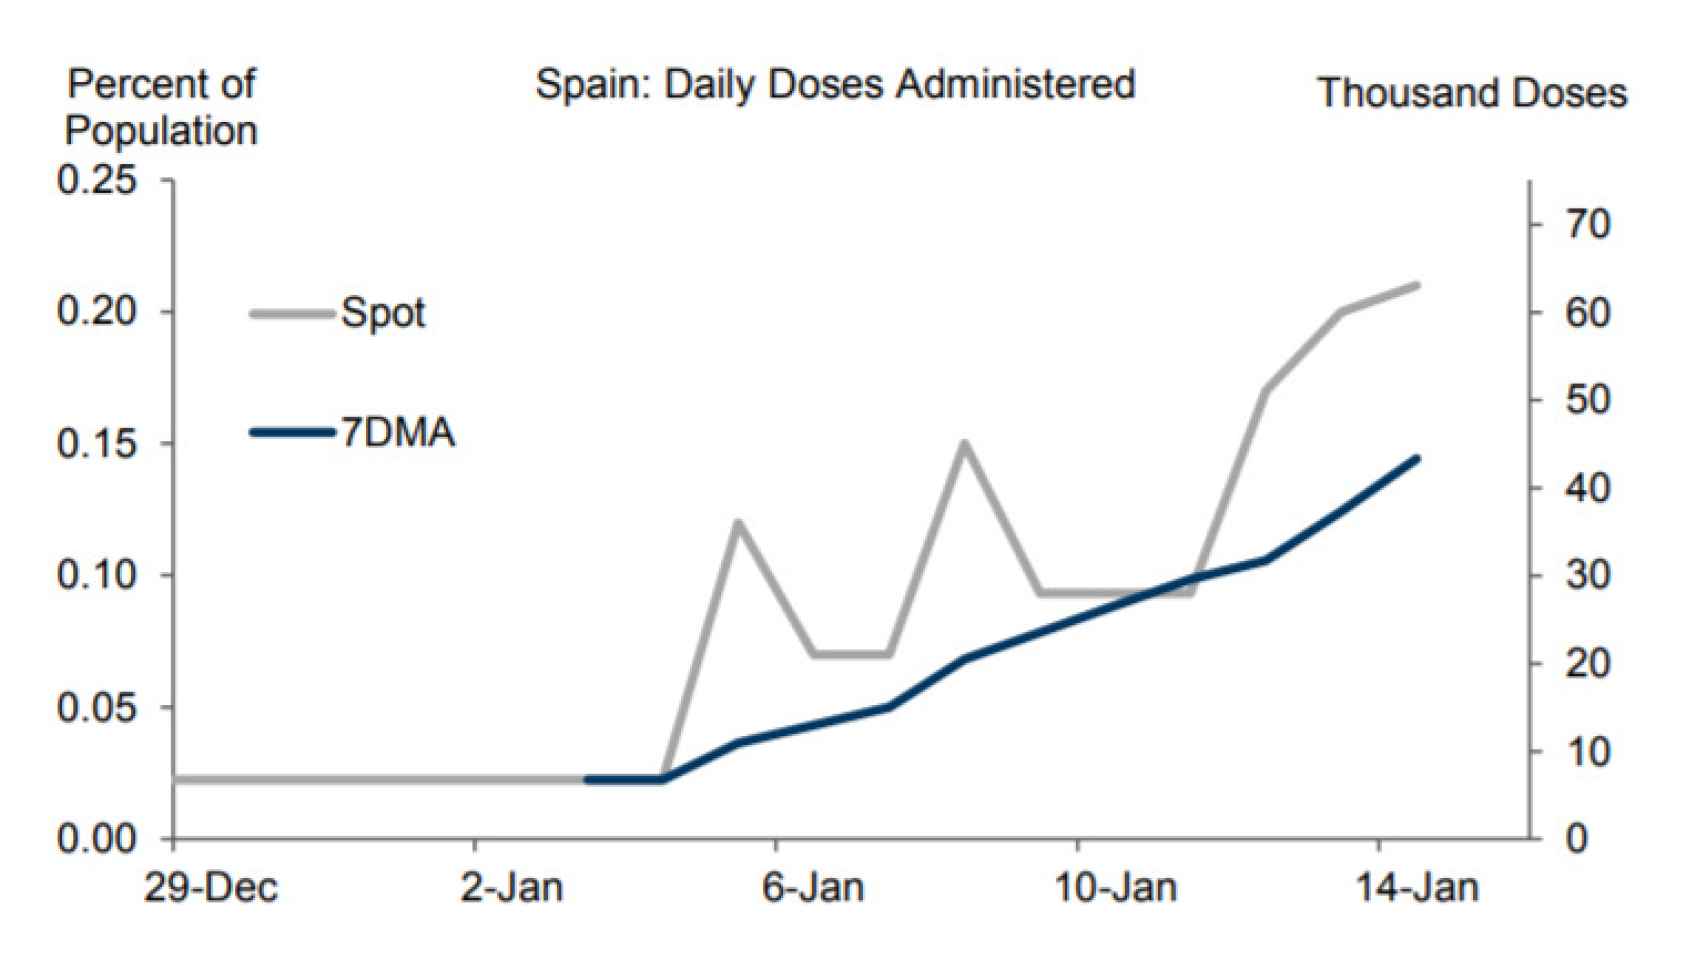 Dosis diarias administradas en España (en miles y en % de población). Fuente: Goldman Sachs.